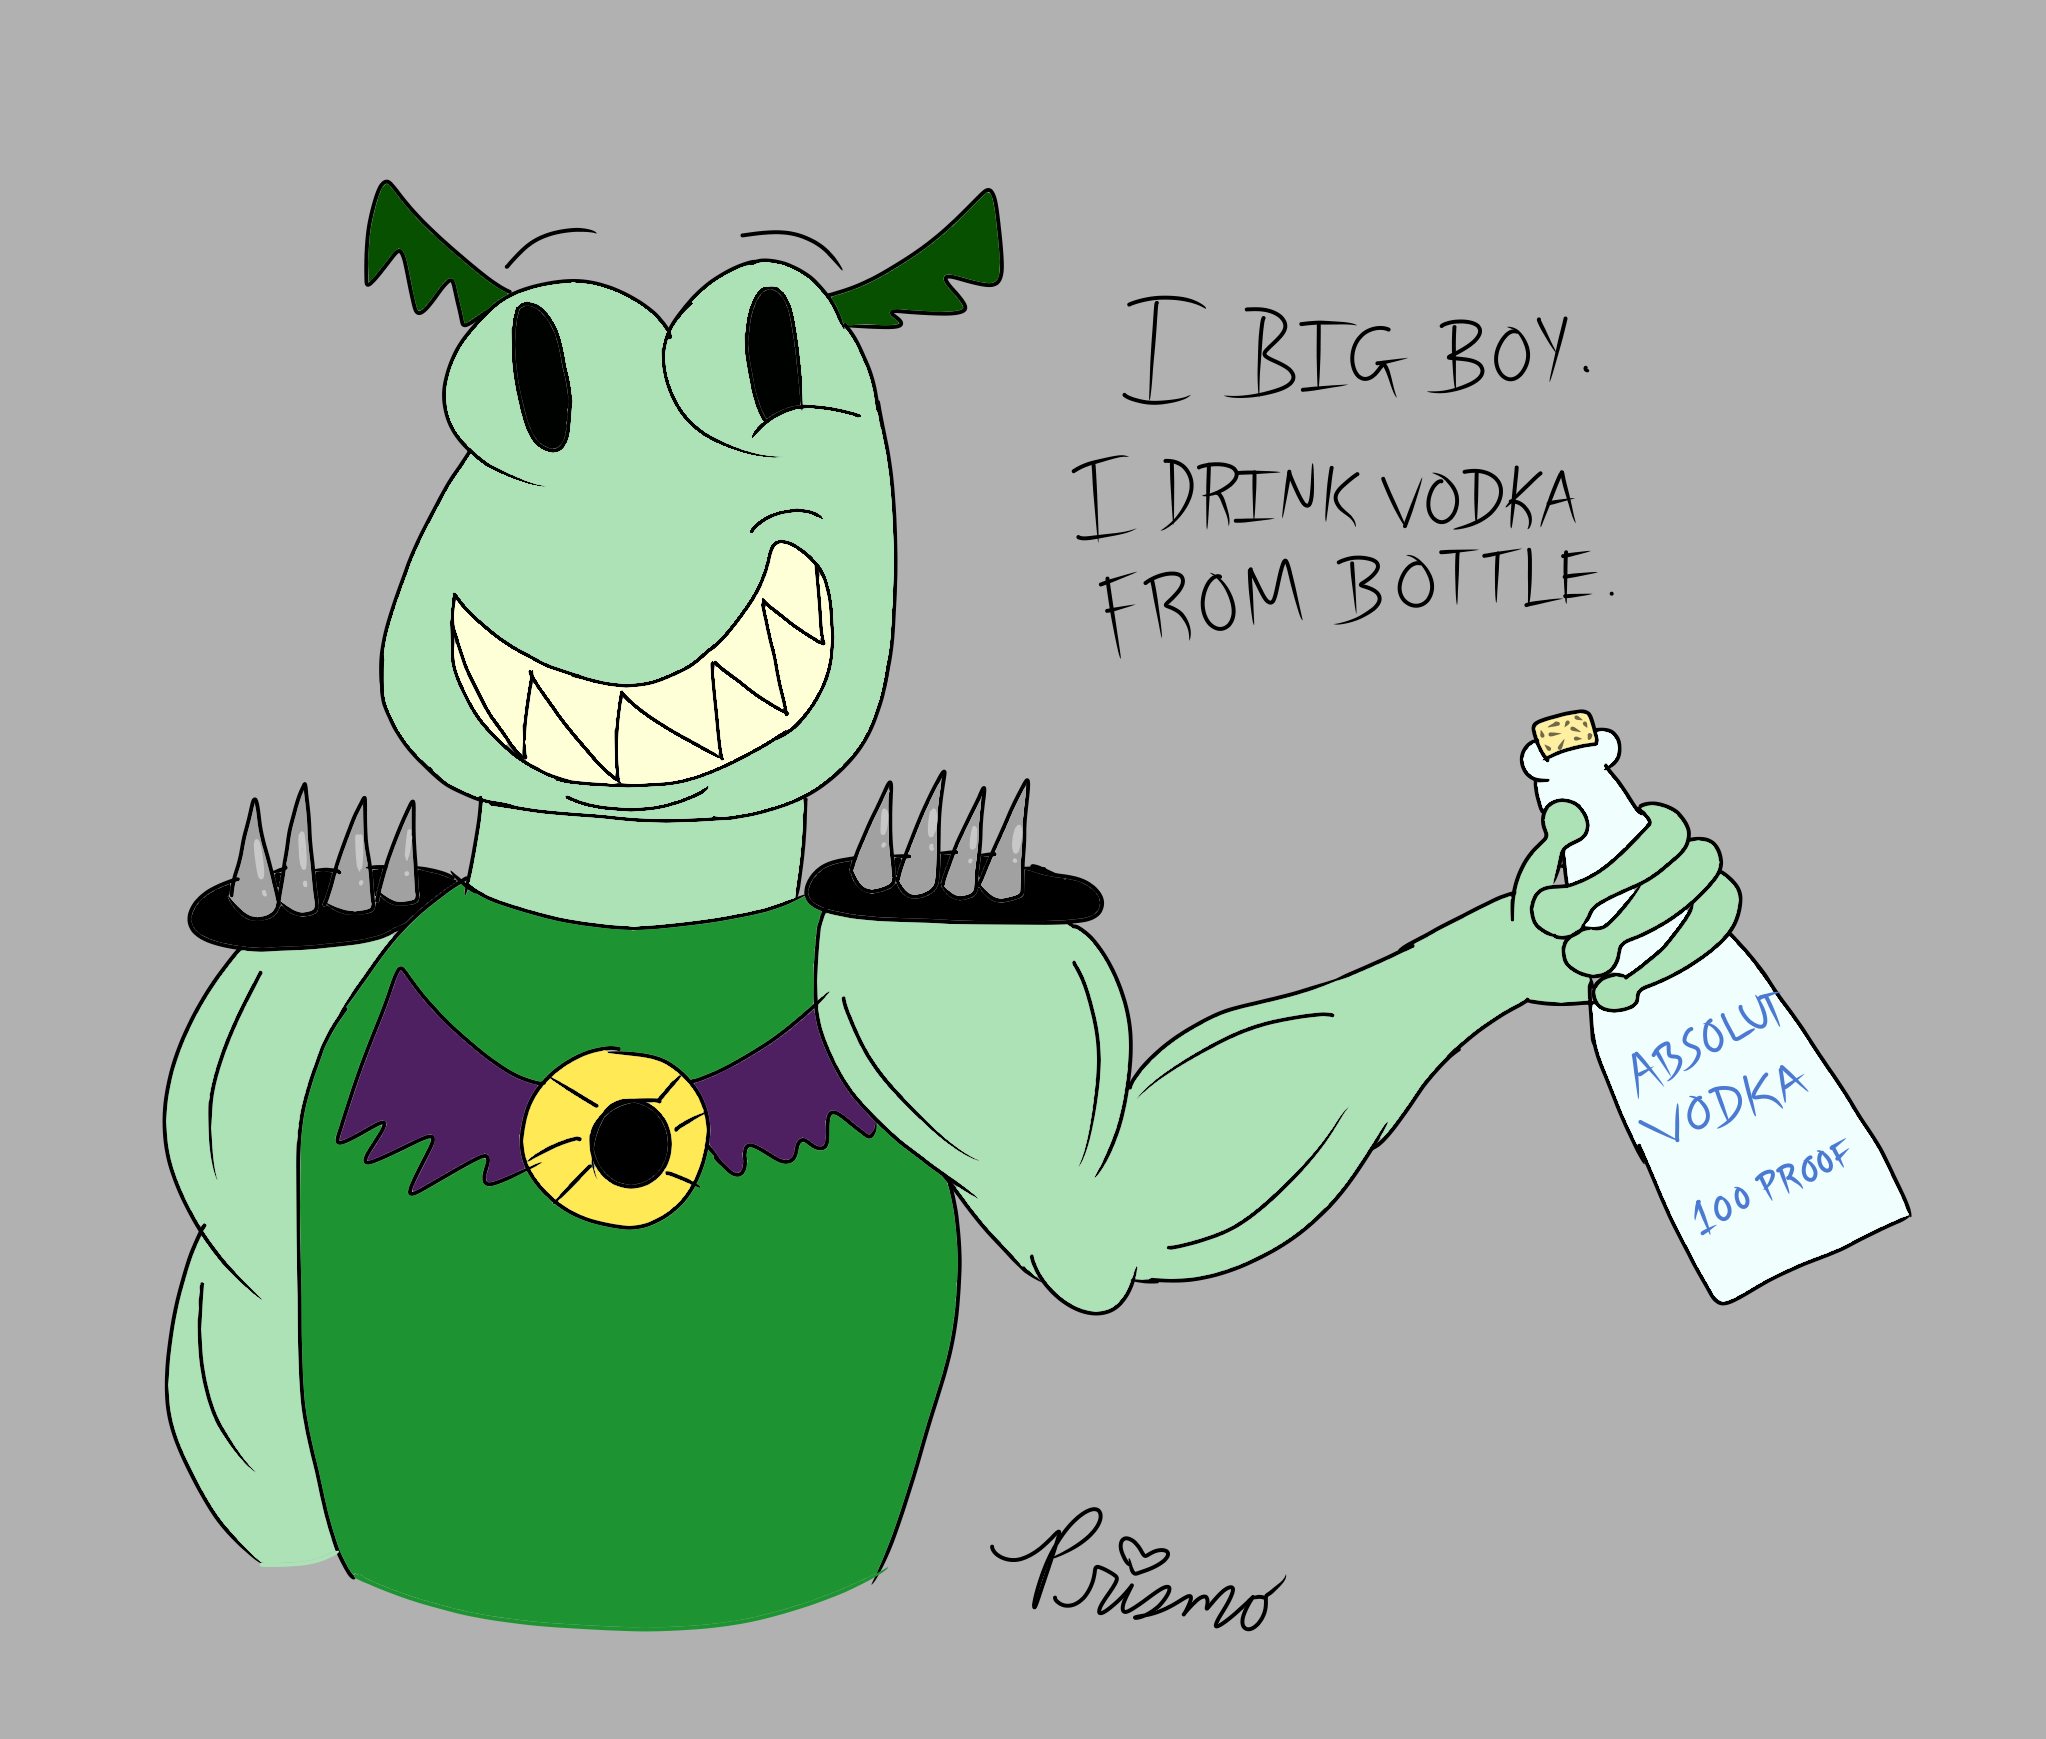 Buff Frog Water Bottle